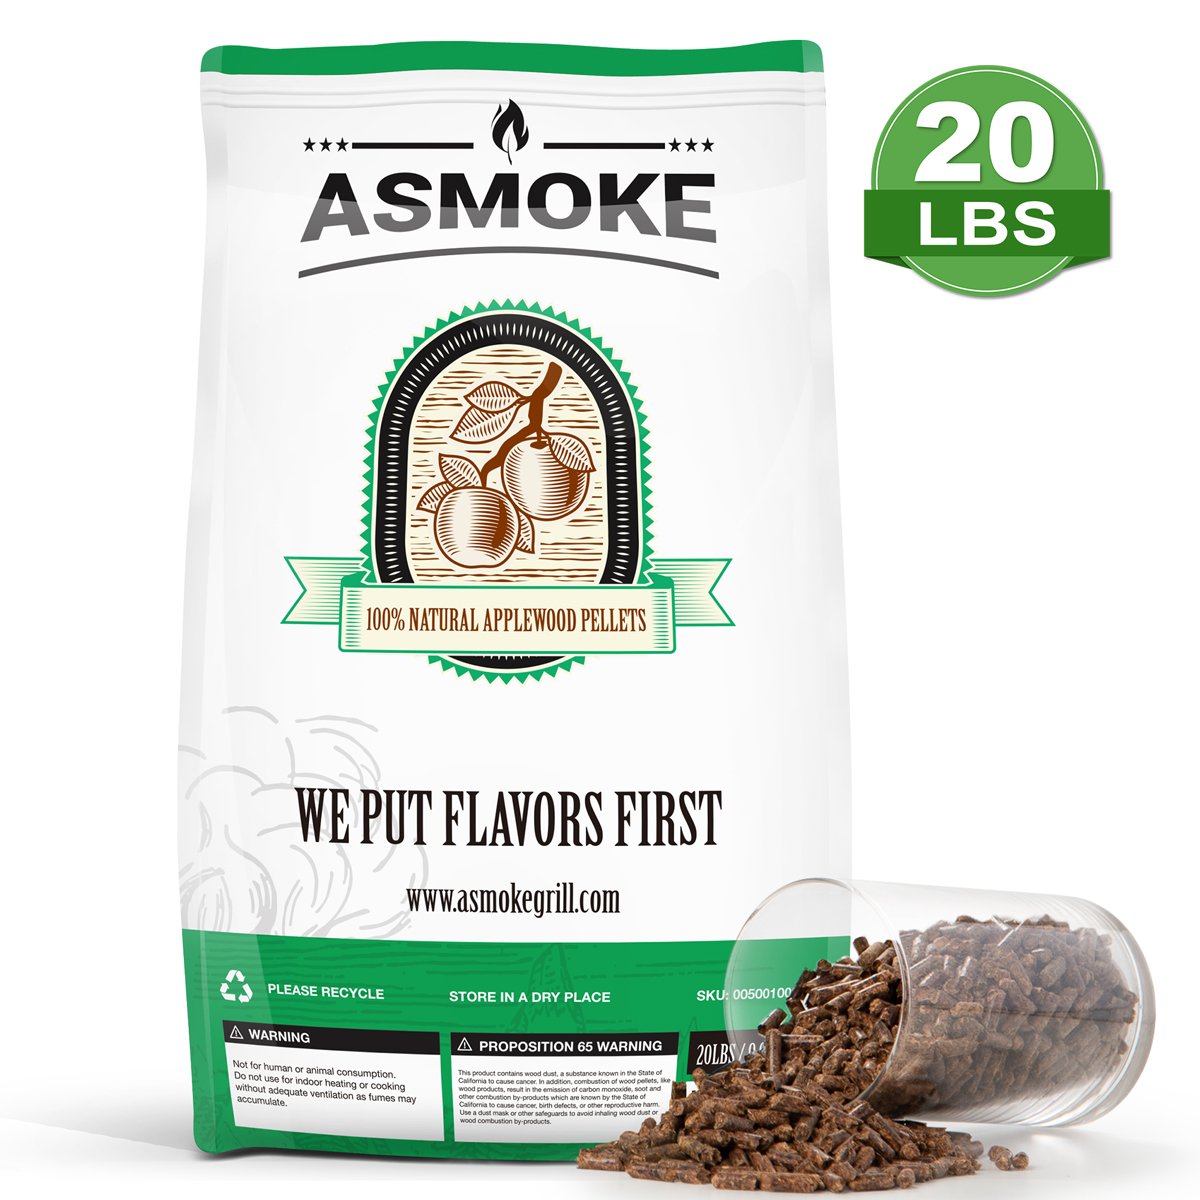 Asmoke 20 LBS of 100% Pure Applewood Pellets